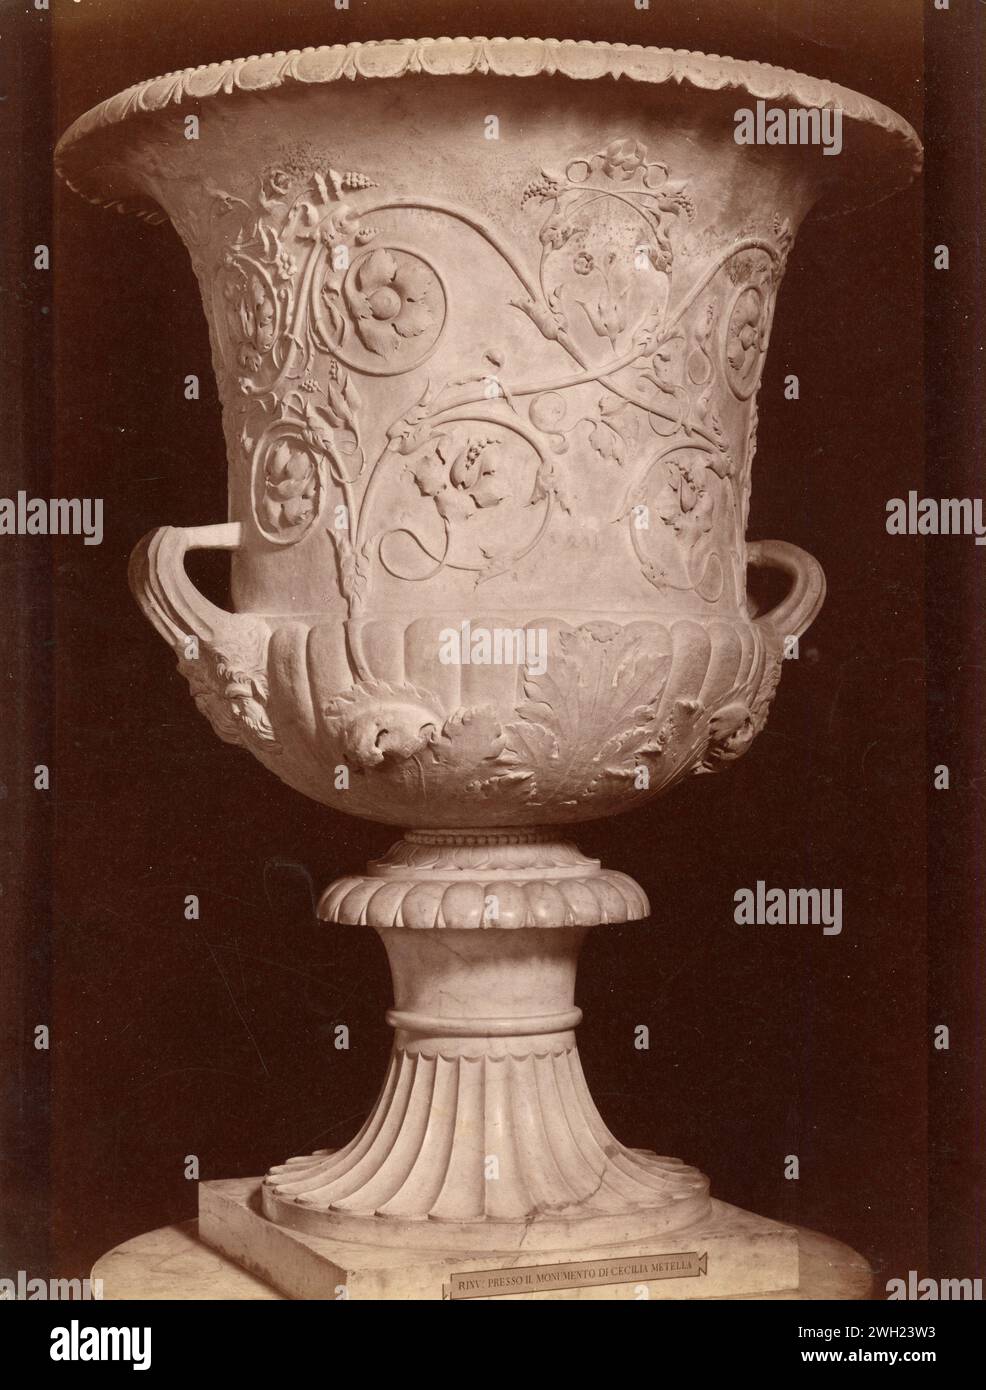 Antico vaso romano trovato nella tomba di Cecilia Metella, Italia del 1900 Foto Stock